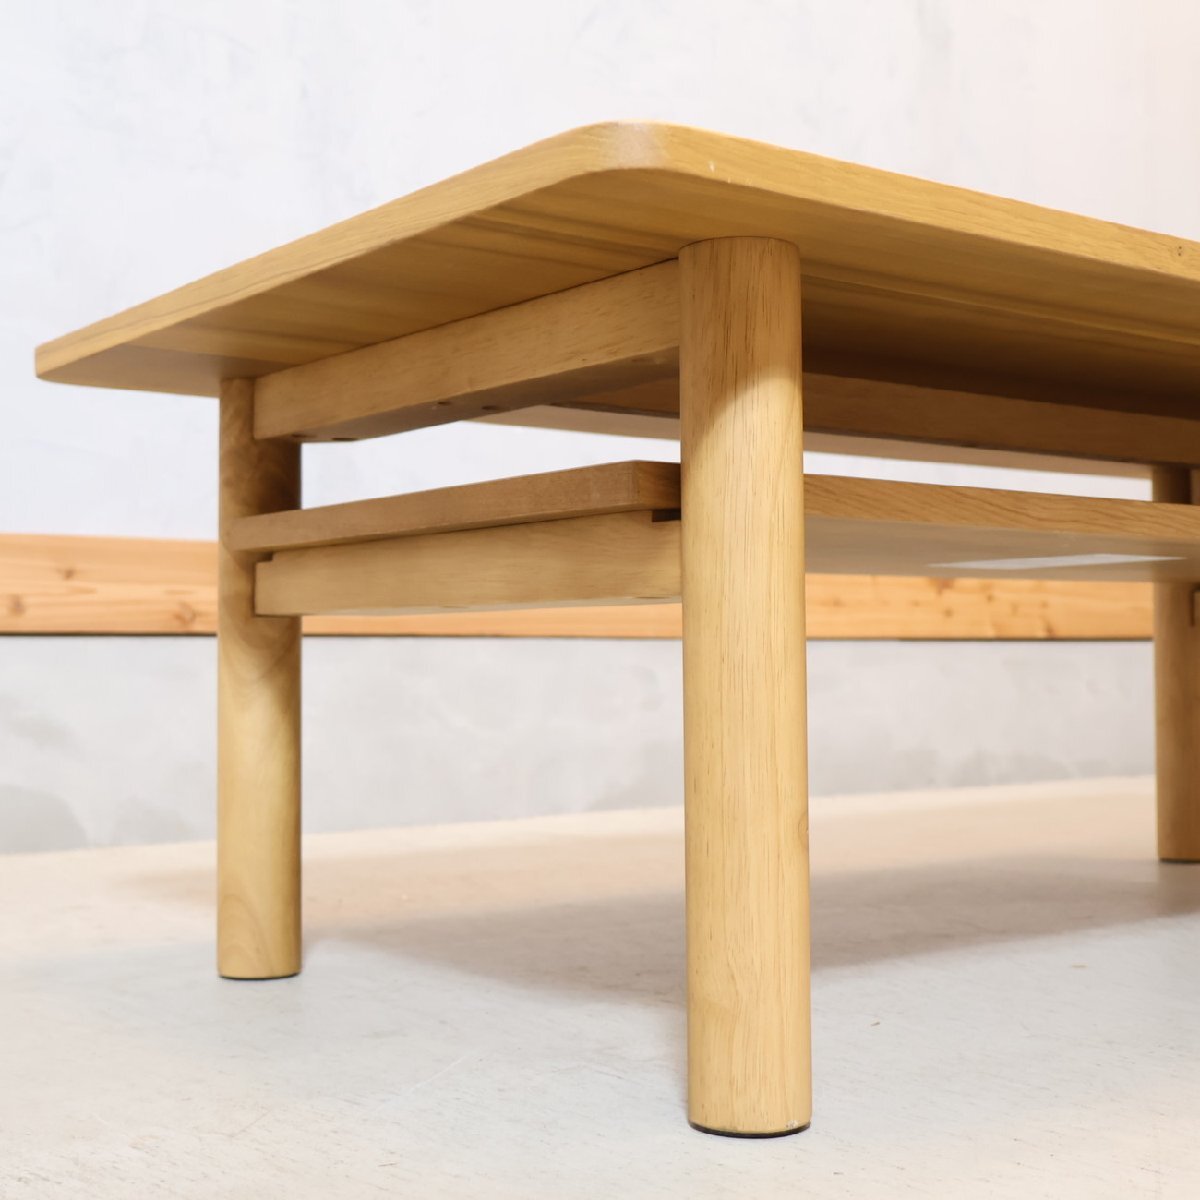 無印良品 MUJI オーク材 木製ローテーブル リビングテーブル センターテーブル 北欧スタイル ナチュラル カフェスタイル シンプル ED322_画像3